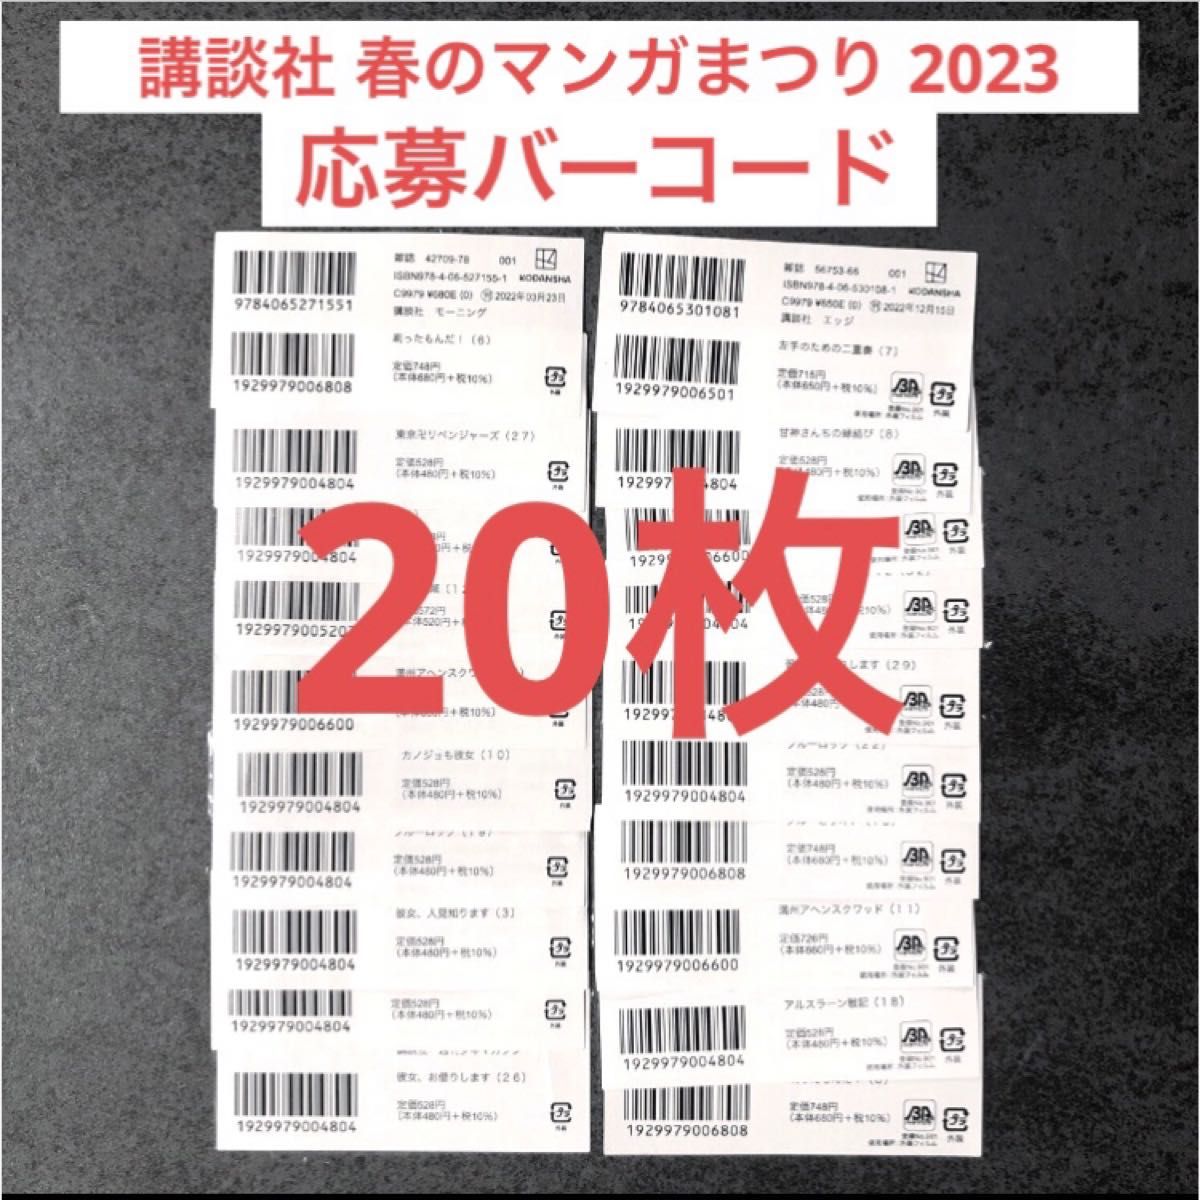 講談社 春のマンガまつり 2023 応募券 バーコード 20枚セット 東京 